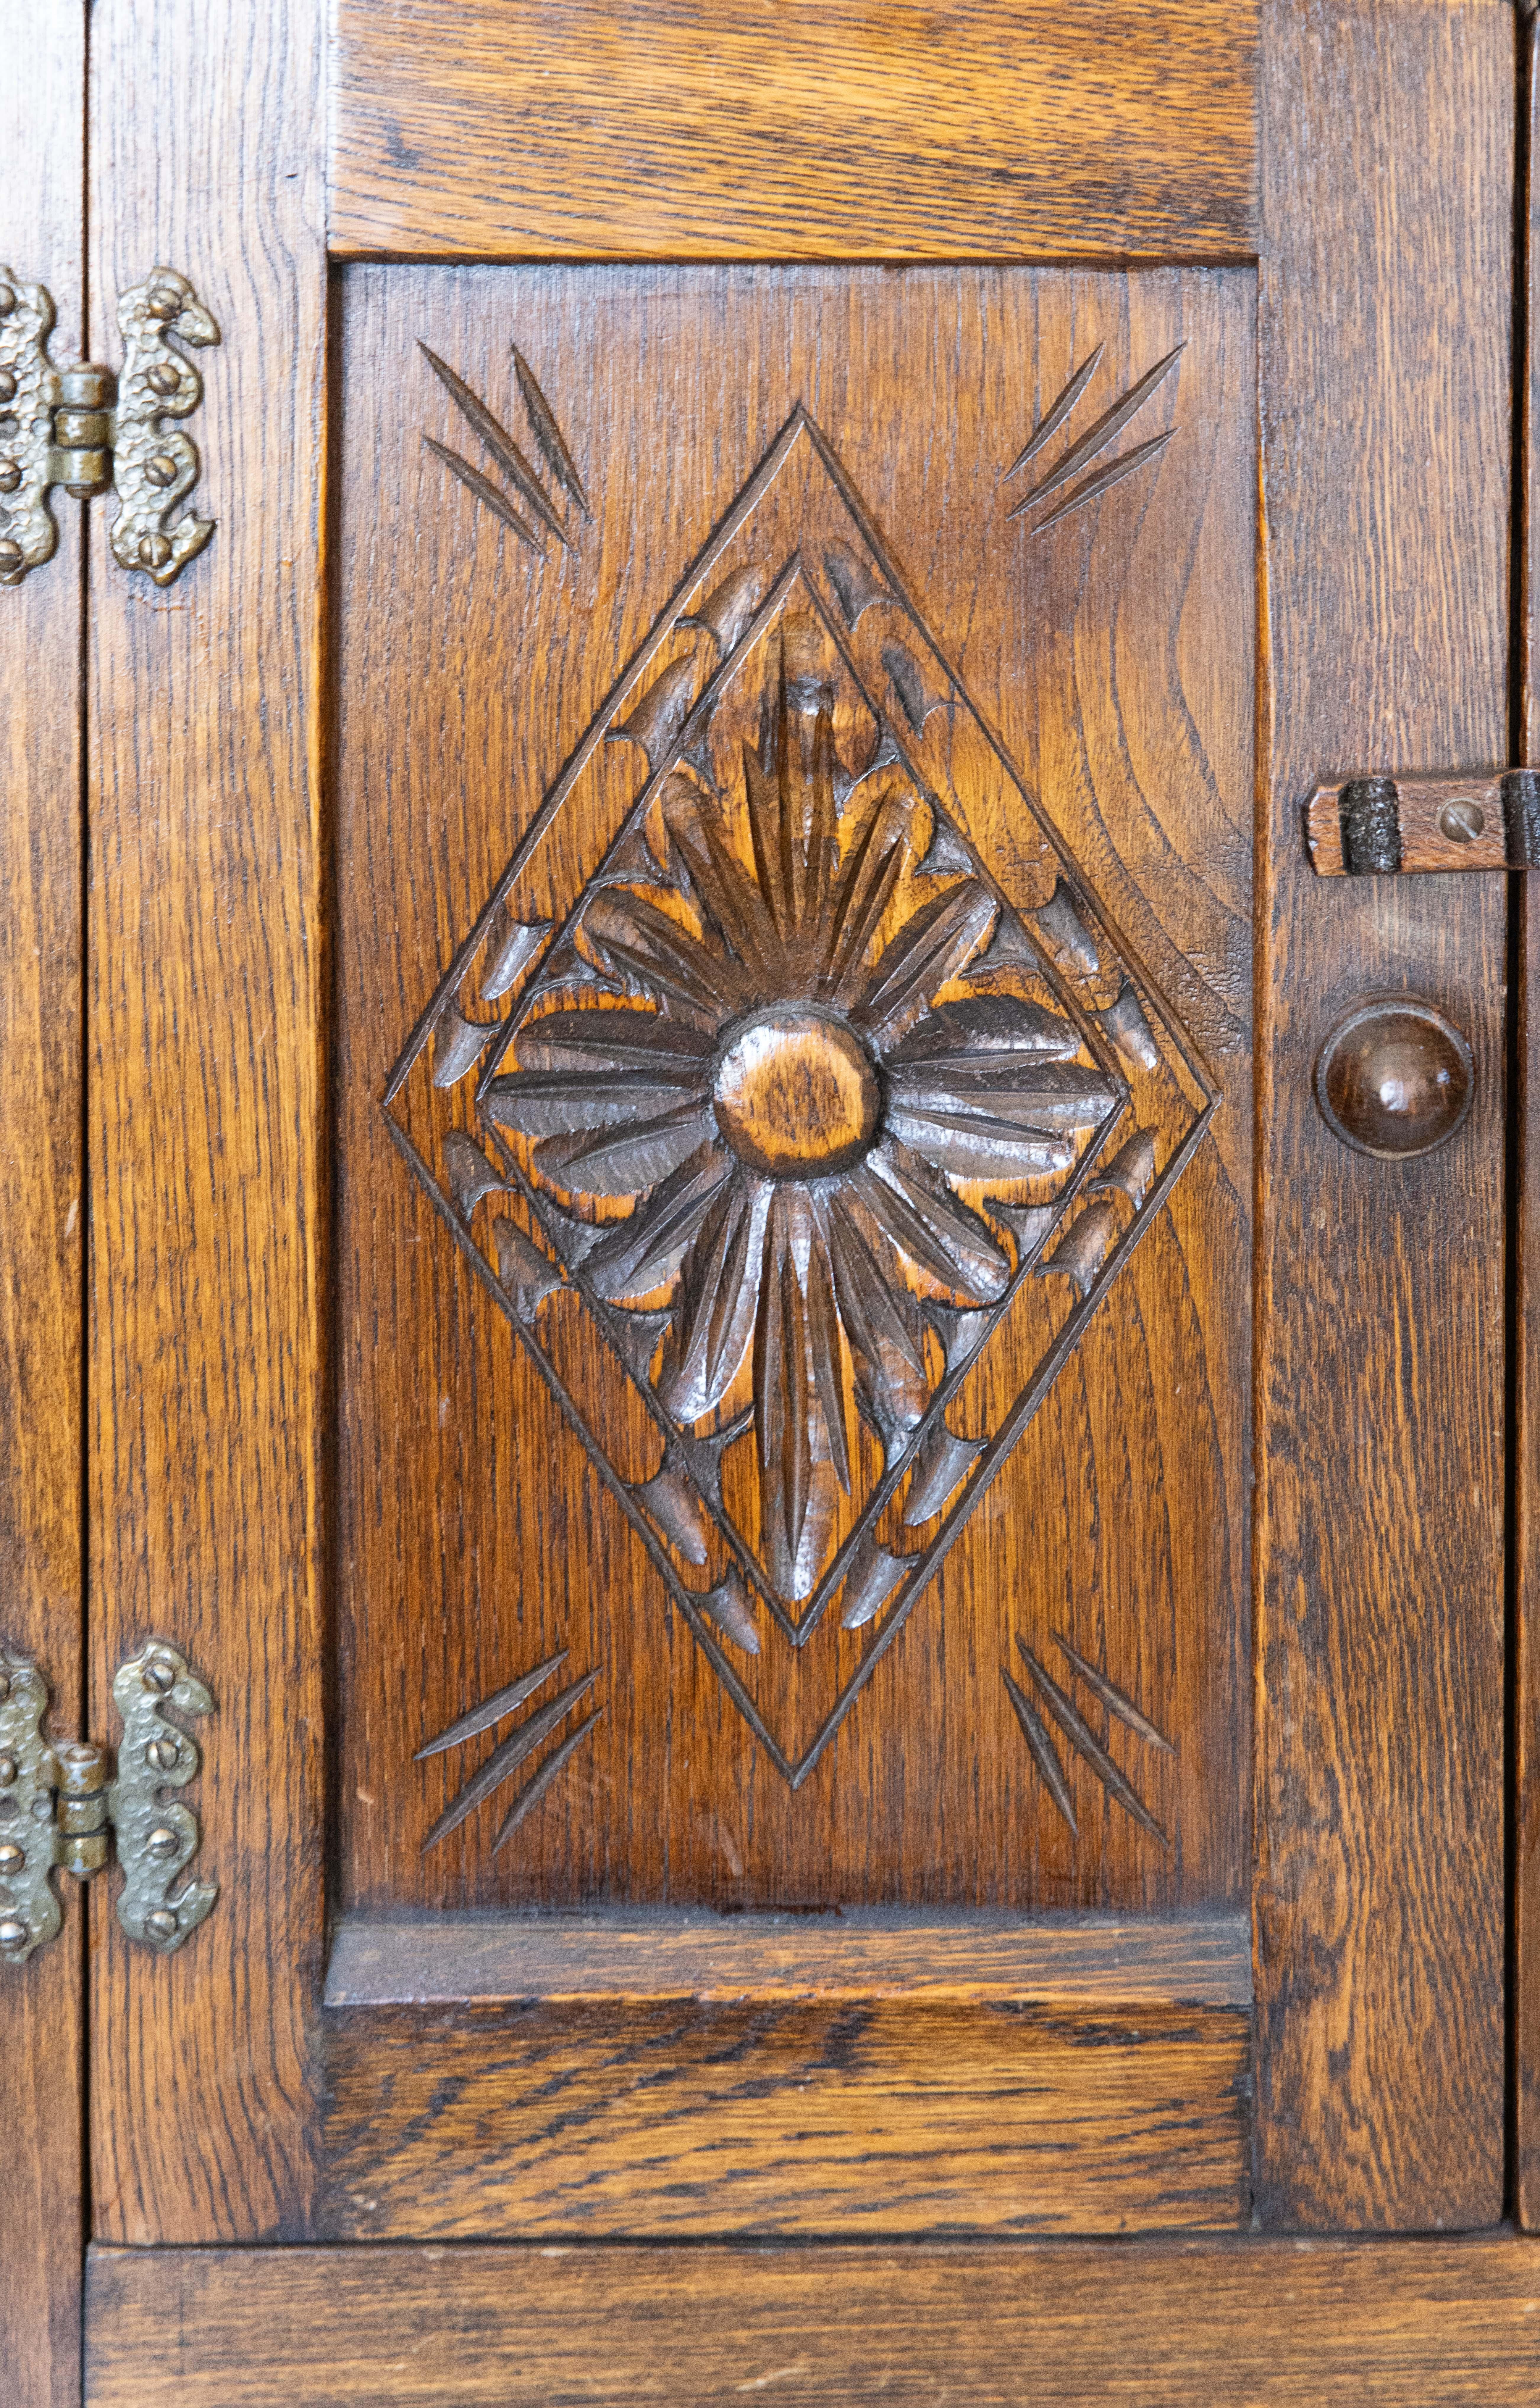 Ancienne armoire naine en chêne sculpté de style anglais du 17e siècle. La construction à panneaux est entourée d'une paire de portes, de boutons à glands, de charnières d'époque et d'une belle patine.